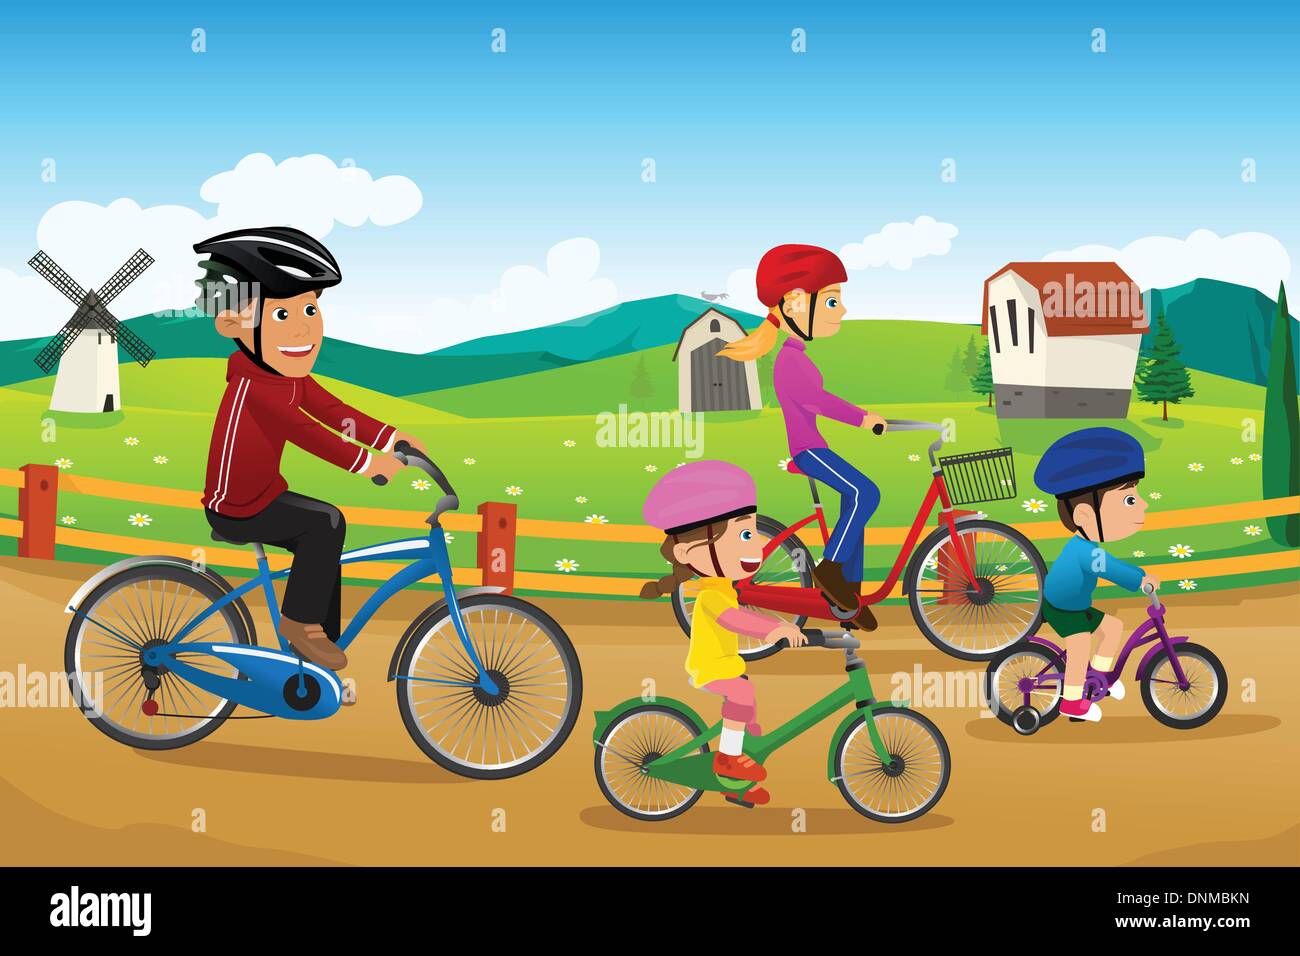 Un vecteur illustration de famille heureuse bicyclette vont ensemble dans une région rurale de campagne Illustration de Vecteur